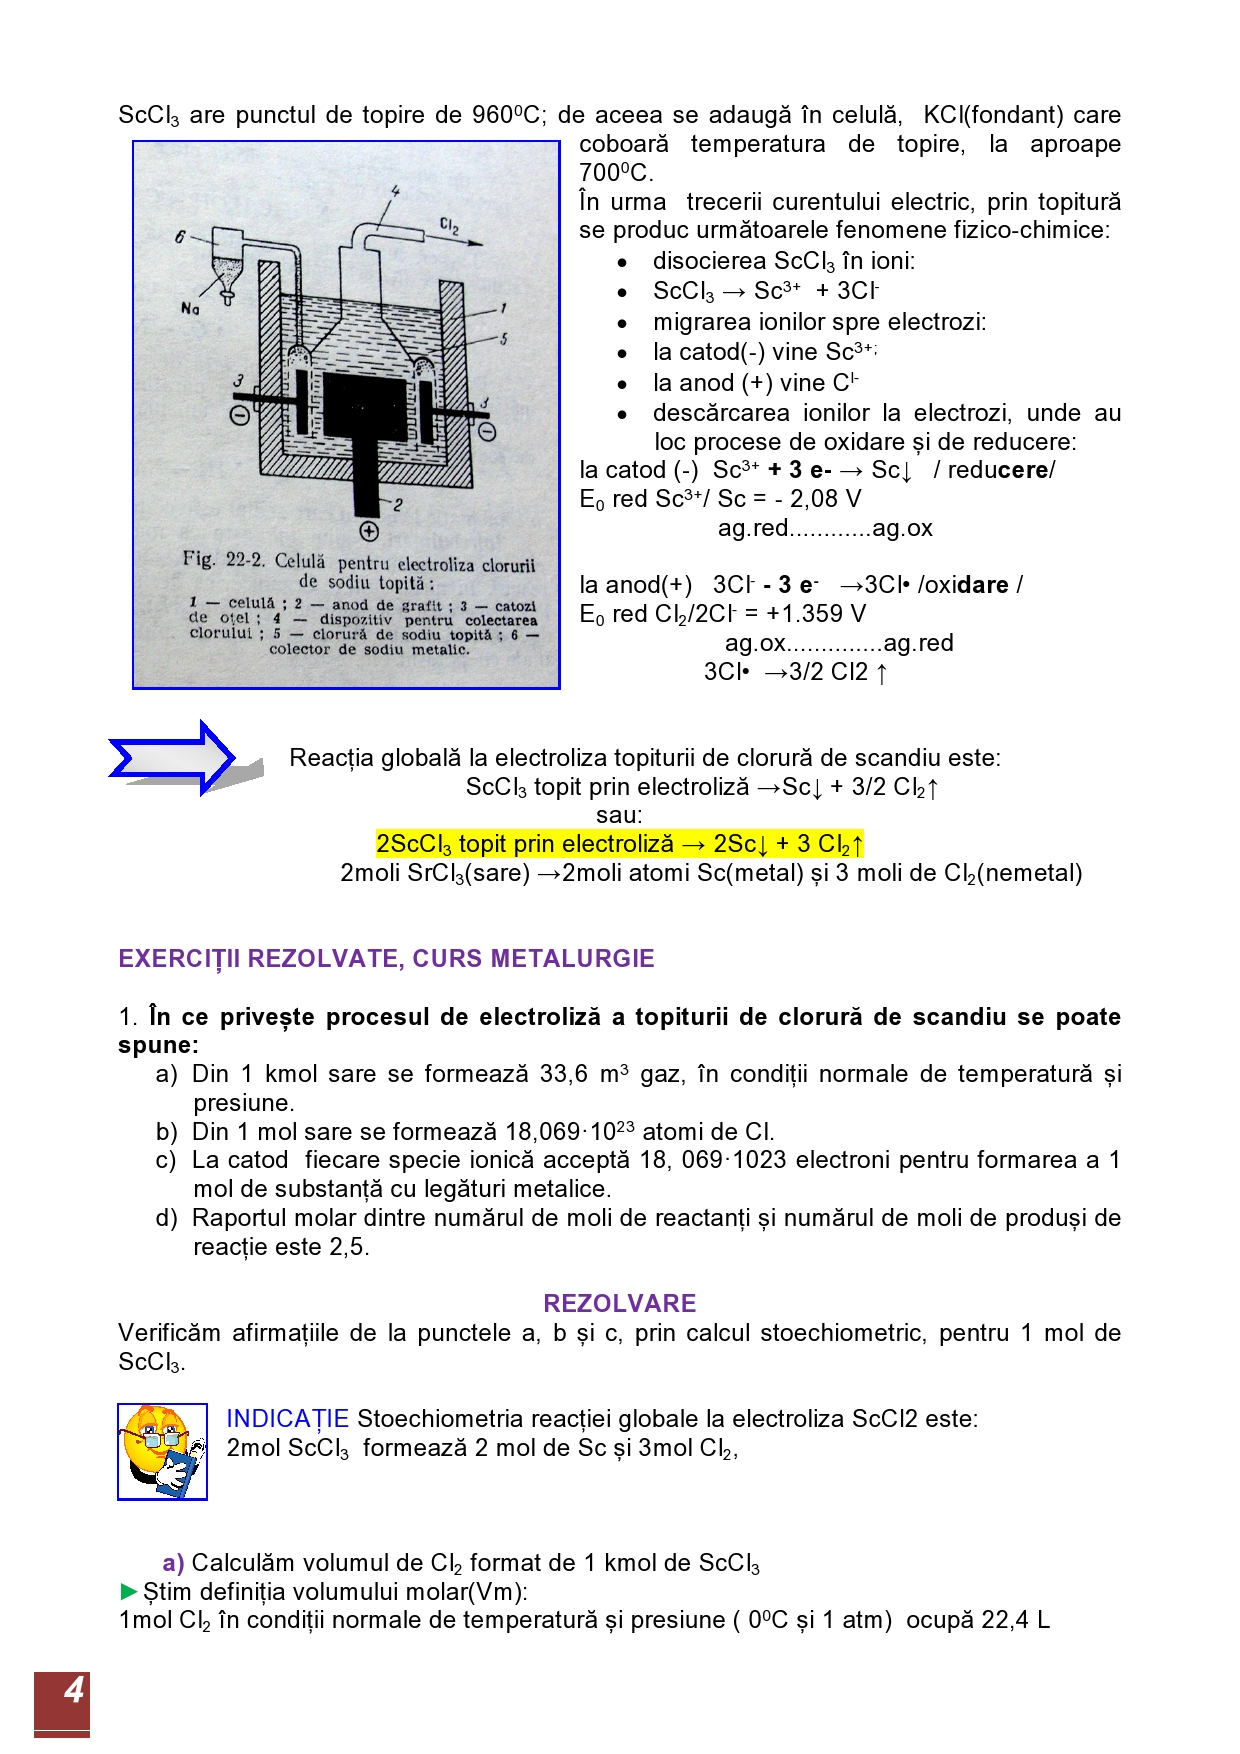 ELECTROLIZA CLORURII DE SCANDIU TOPITE-page0004